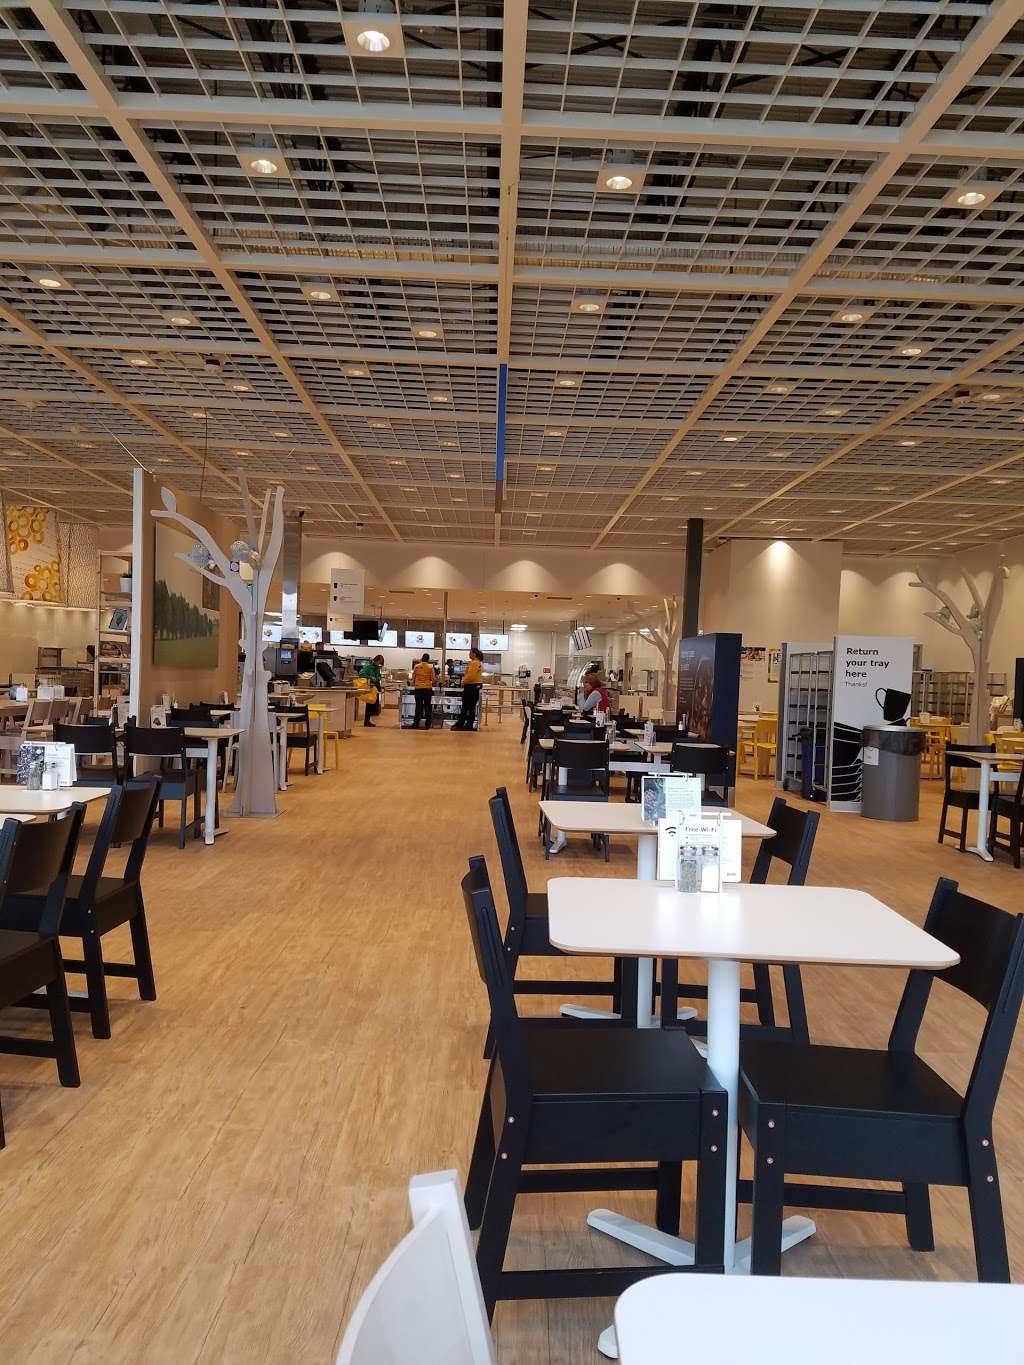 IKEA Fishers Restaurant | 11400 IKEA Way, Fishers, IN 46037 | Phone: (888) 888-4532